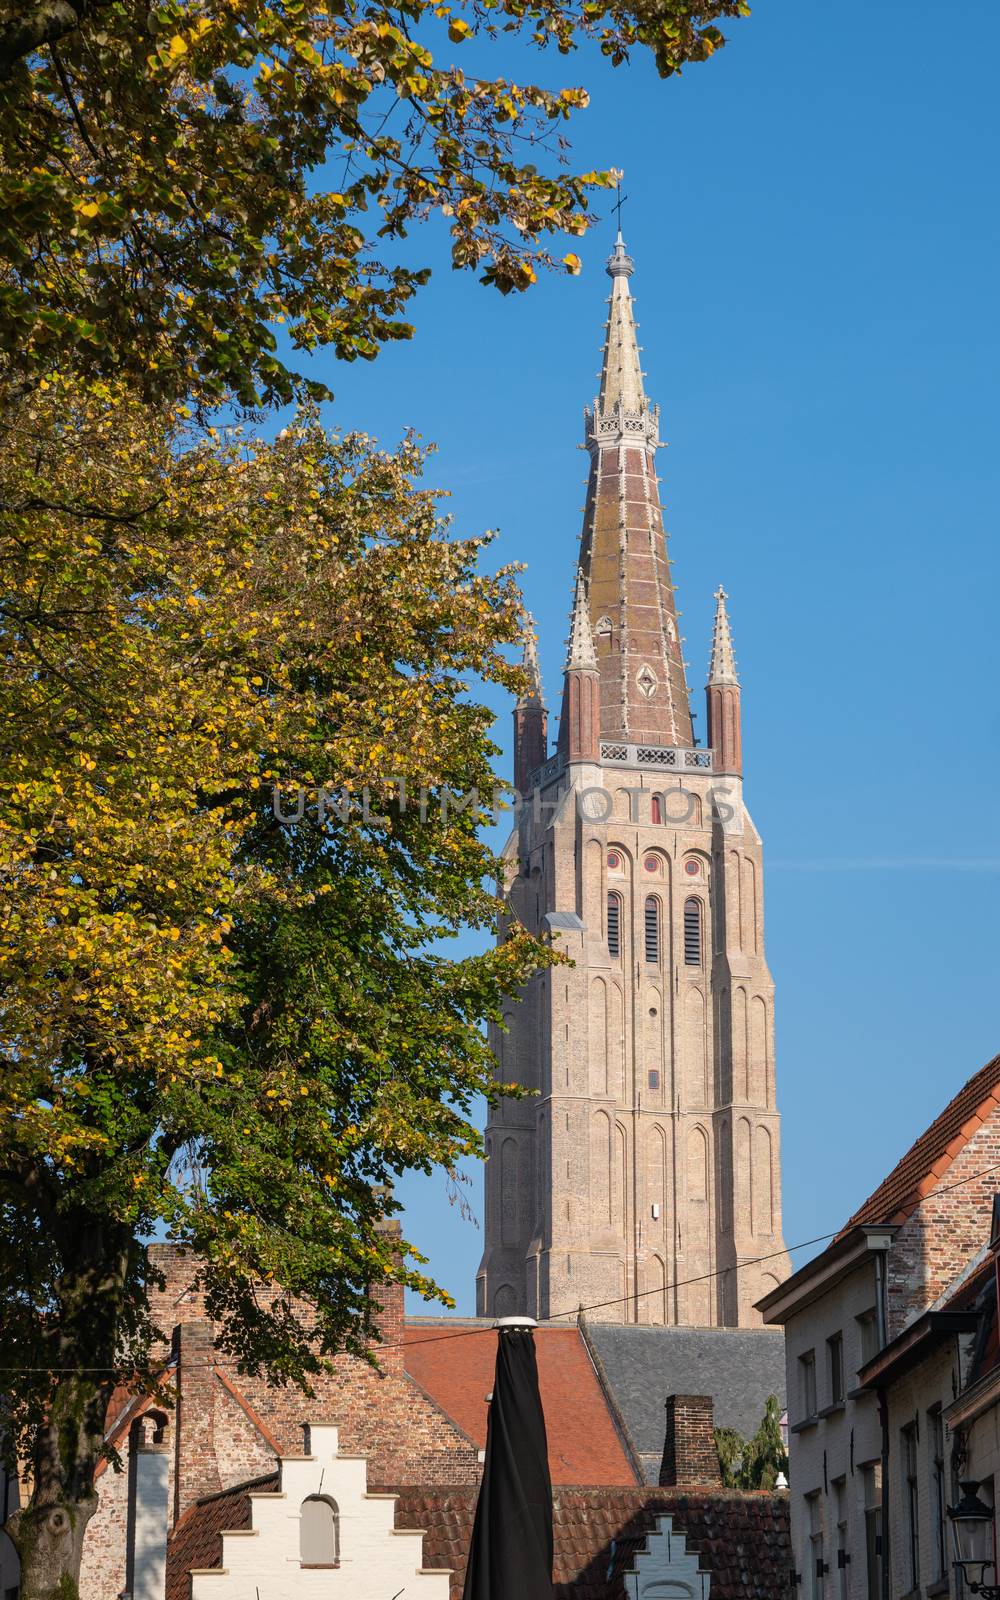 Historic city of Bruges, Belgium